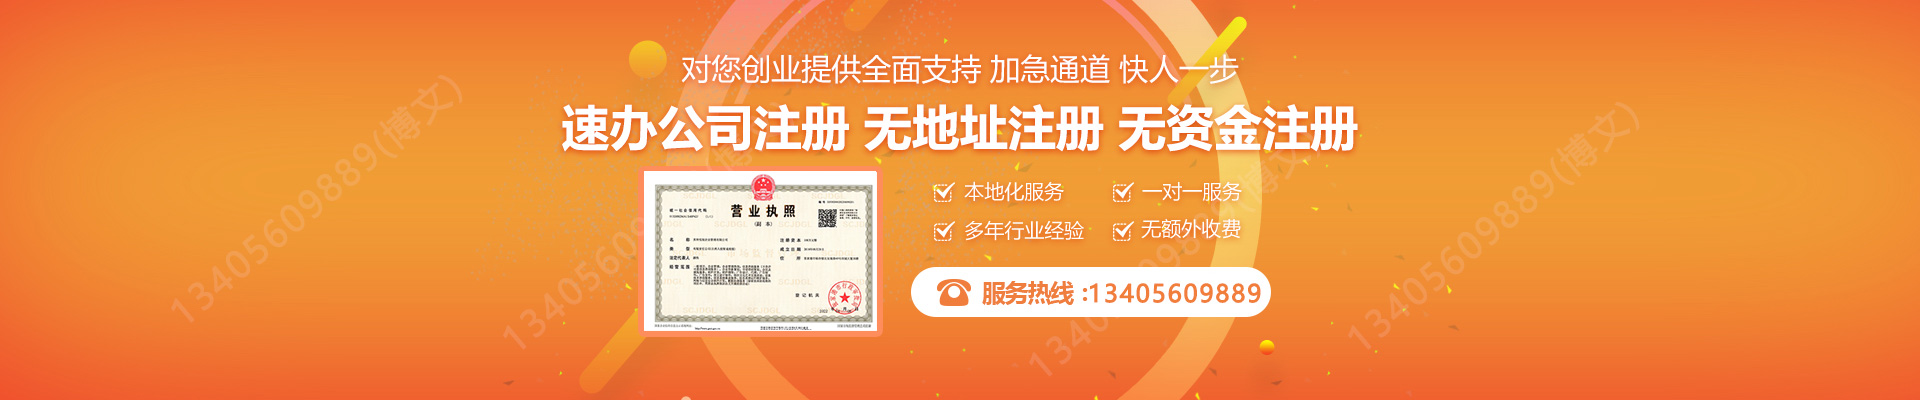 台湾注册公司网